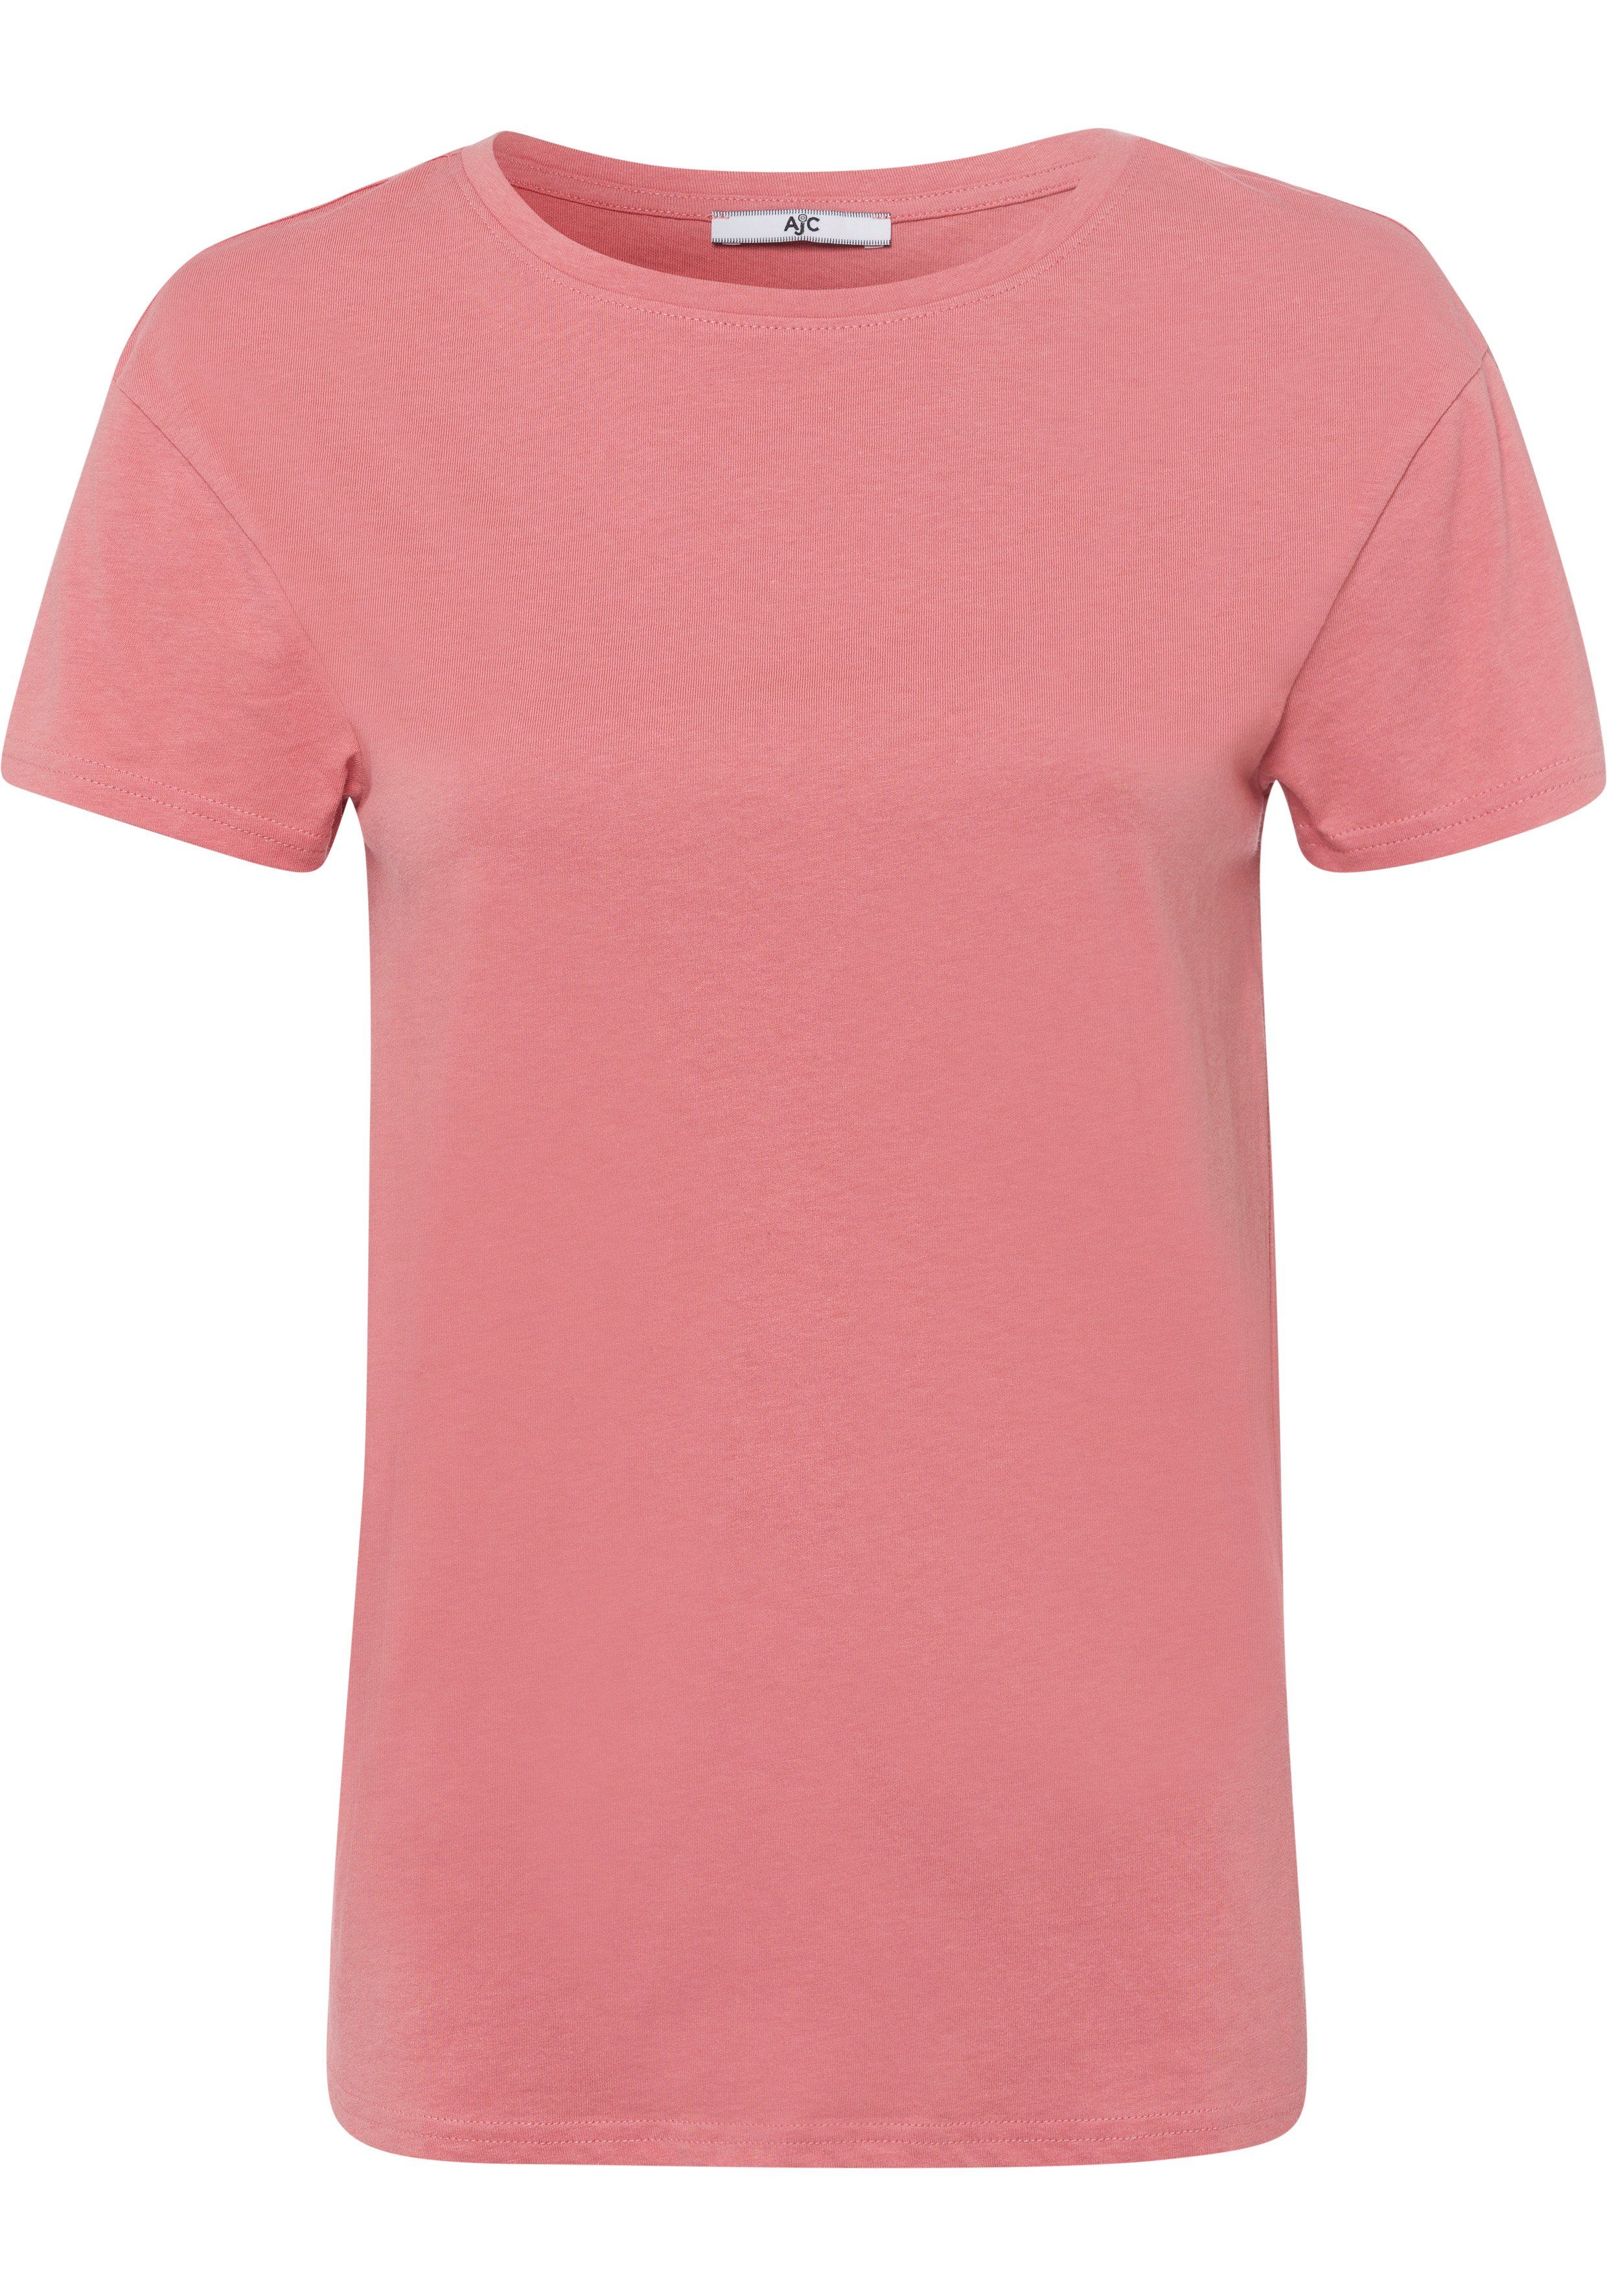 NEUE im trendigen lachs - KOLLEKTION AJC Oversized-Look T-Shirt